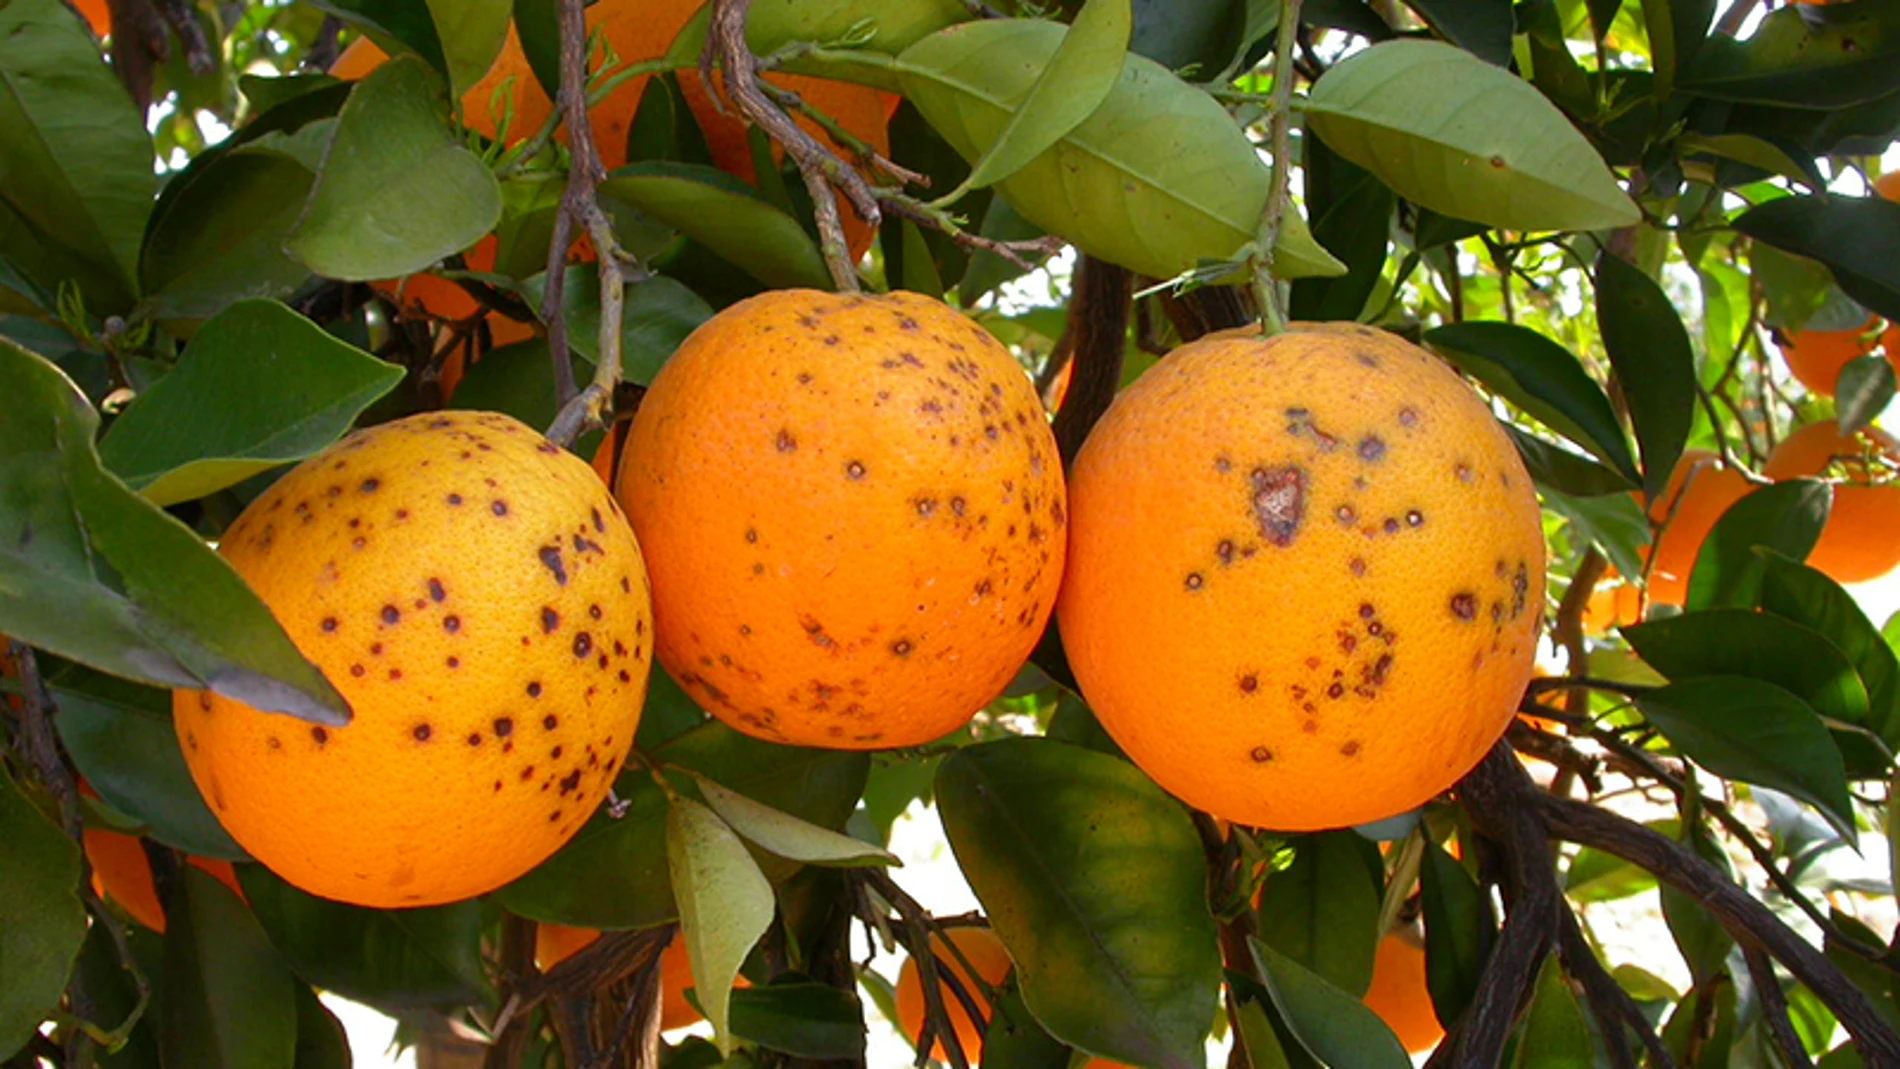 Naranjeros de Suráfrica tildan de "proteccionismo" las medidas fitosanitarias aplicadas a sus envíos infestados de plagas